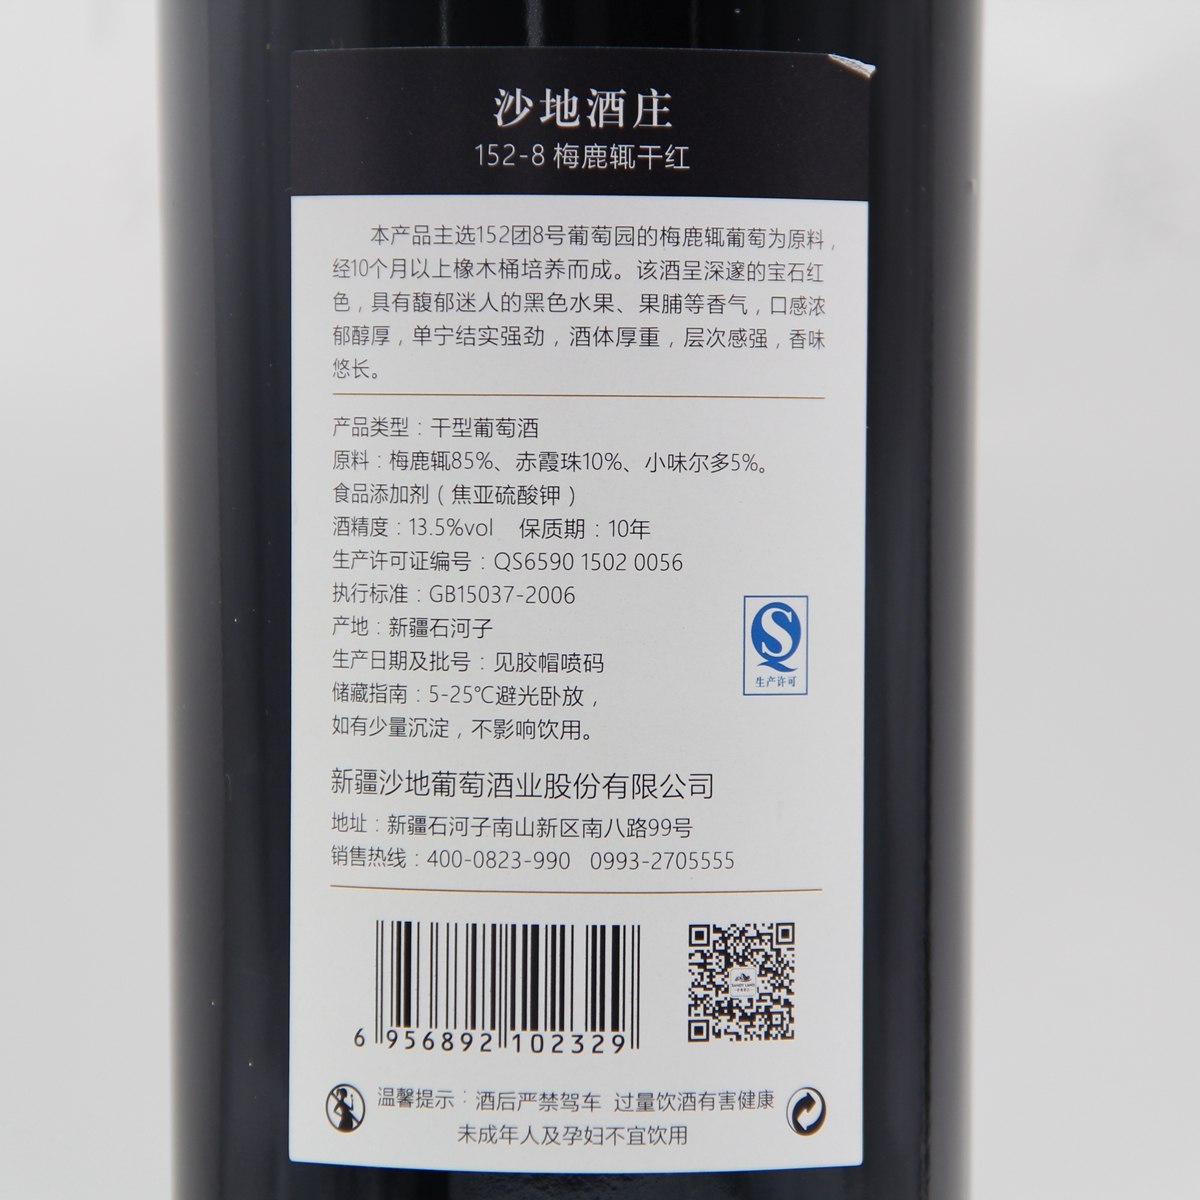 中国新疆产区沙地酒庄 梅鹿辄152-8窖藏干红葡萄酒